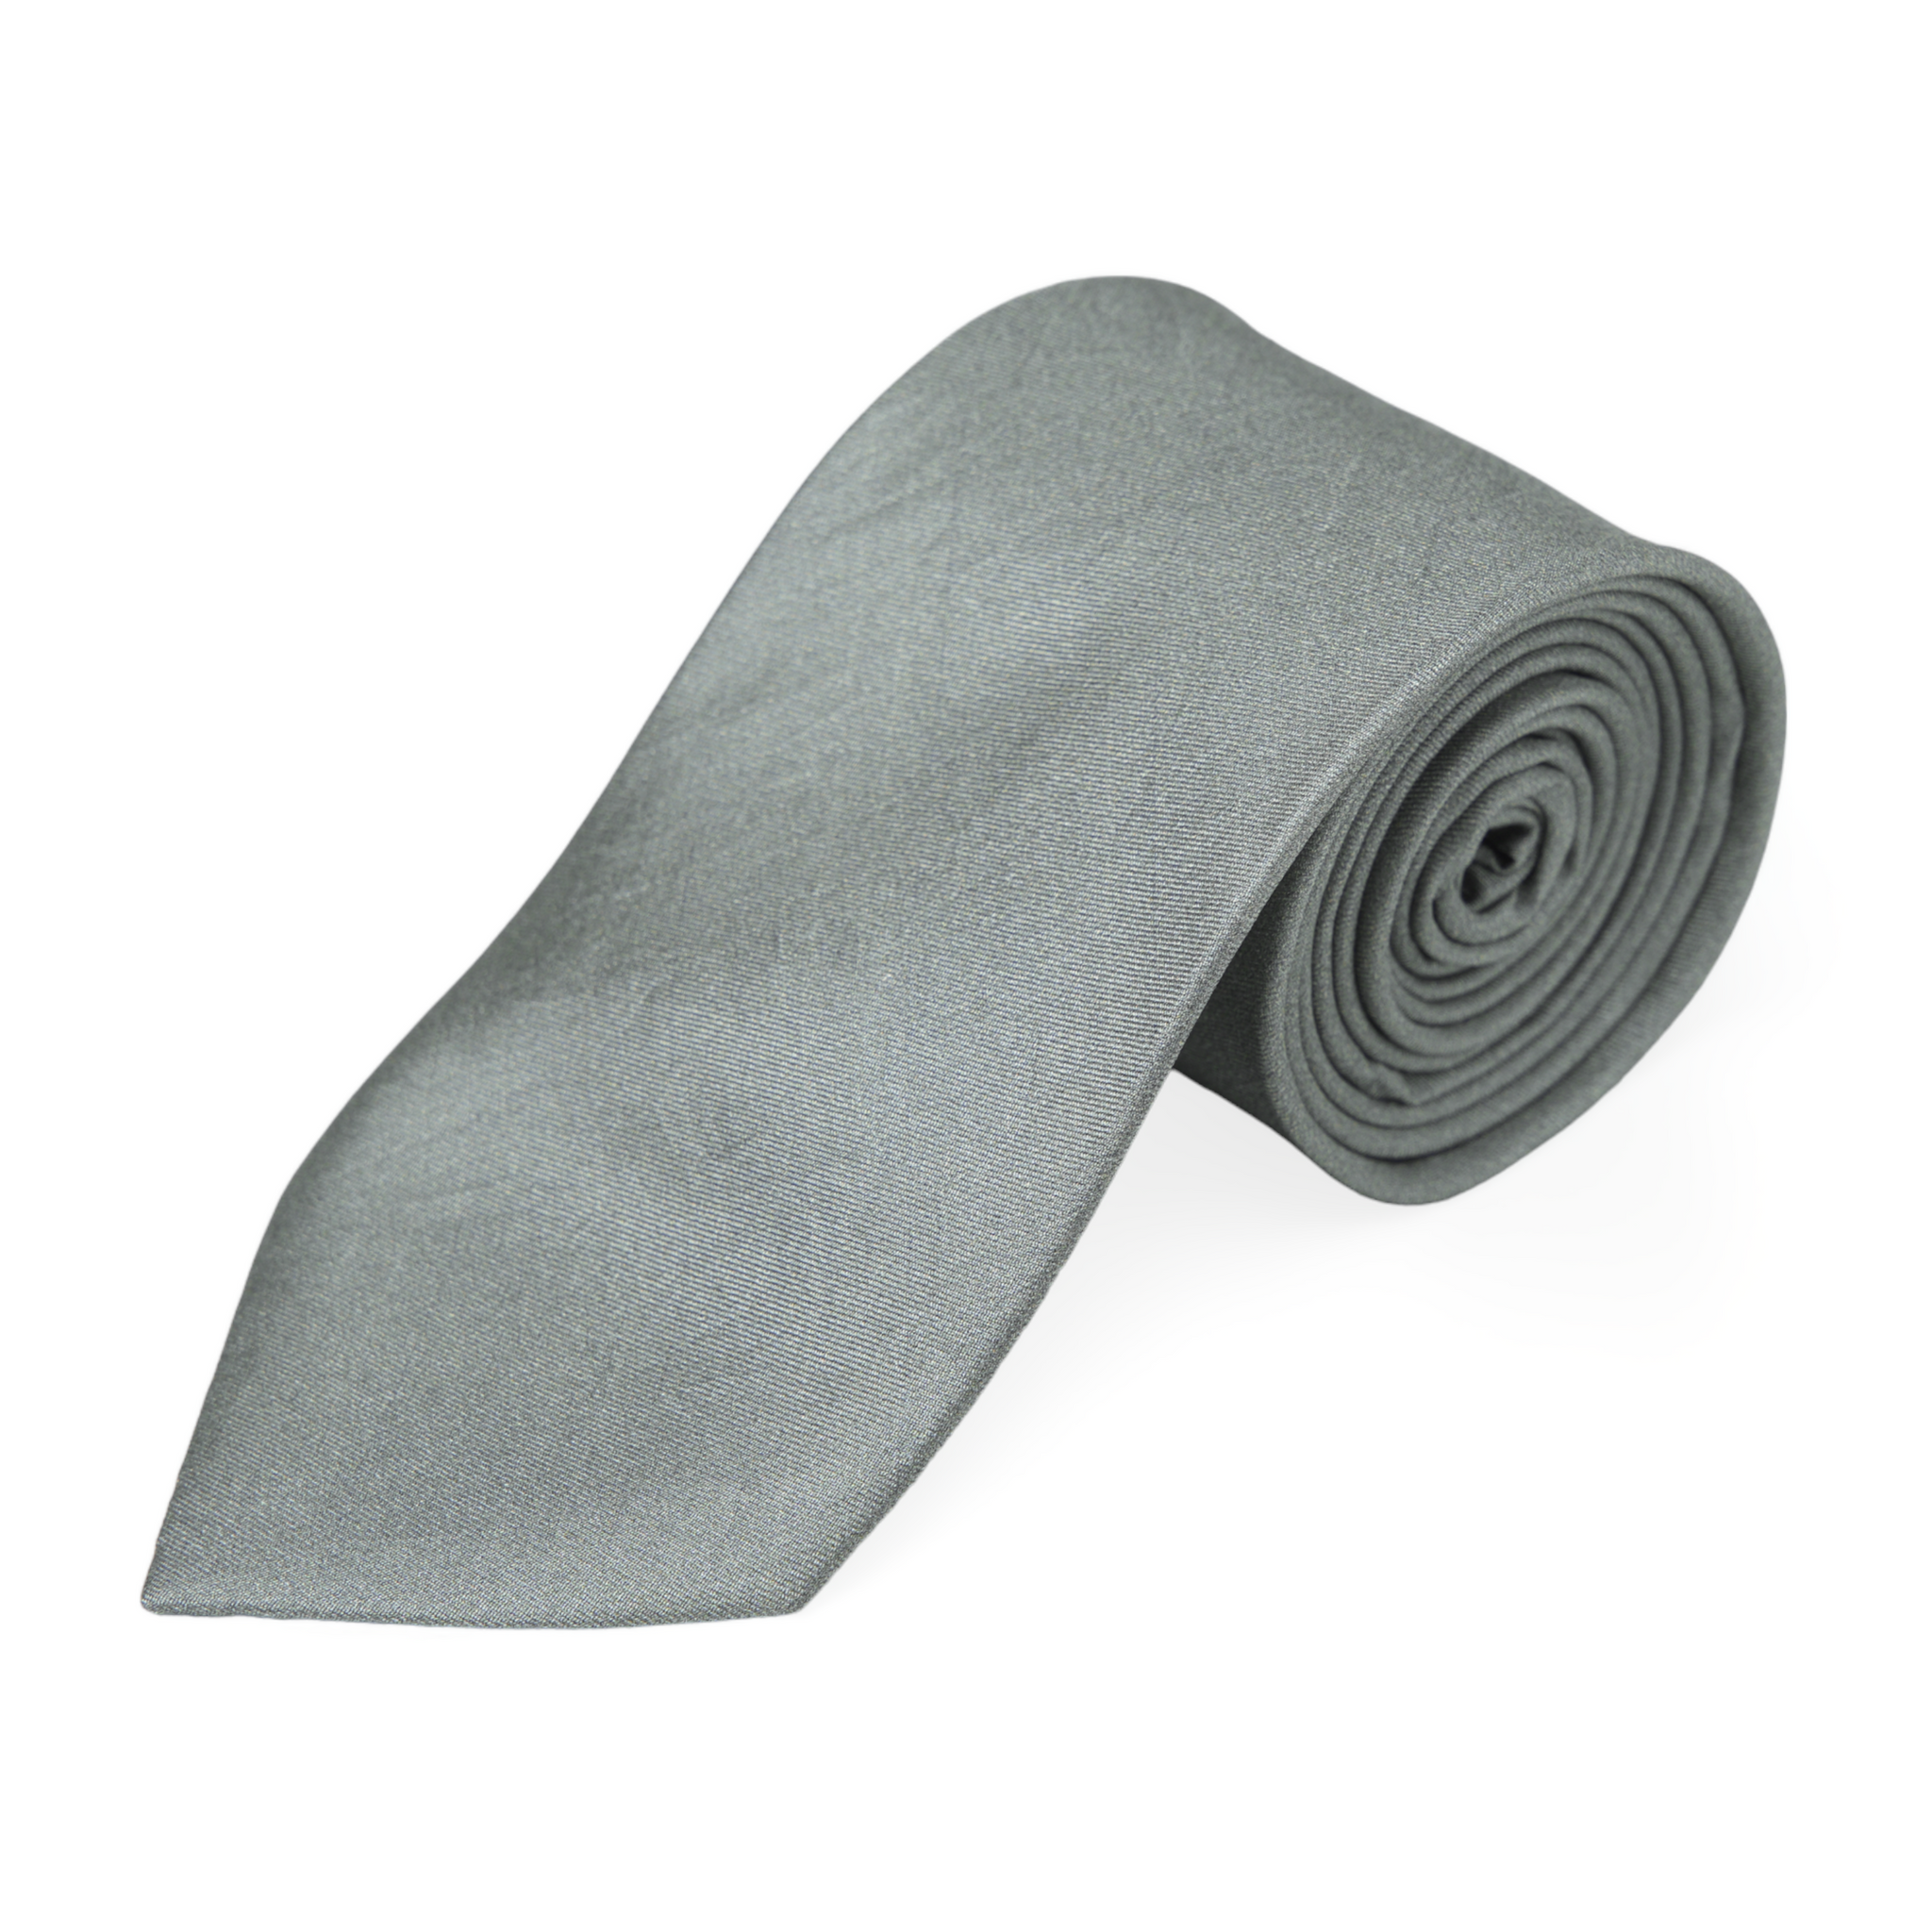 Chokore Dark Grey Twill Silk Tie - Solids line